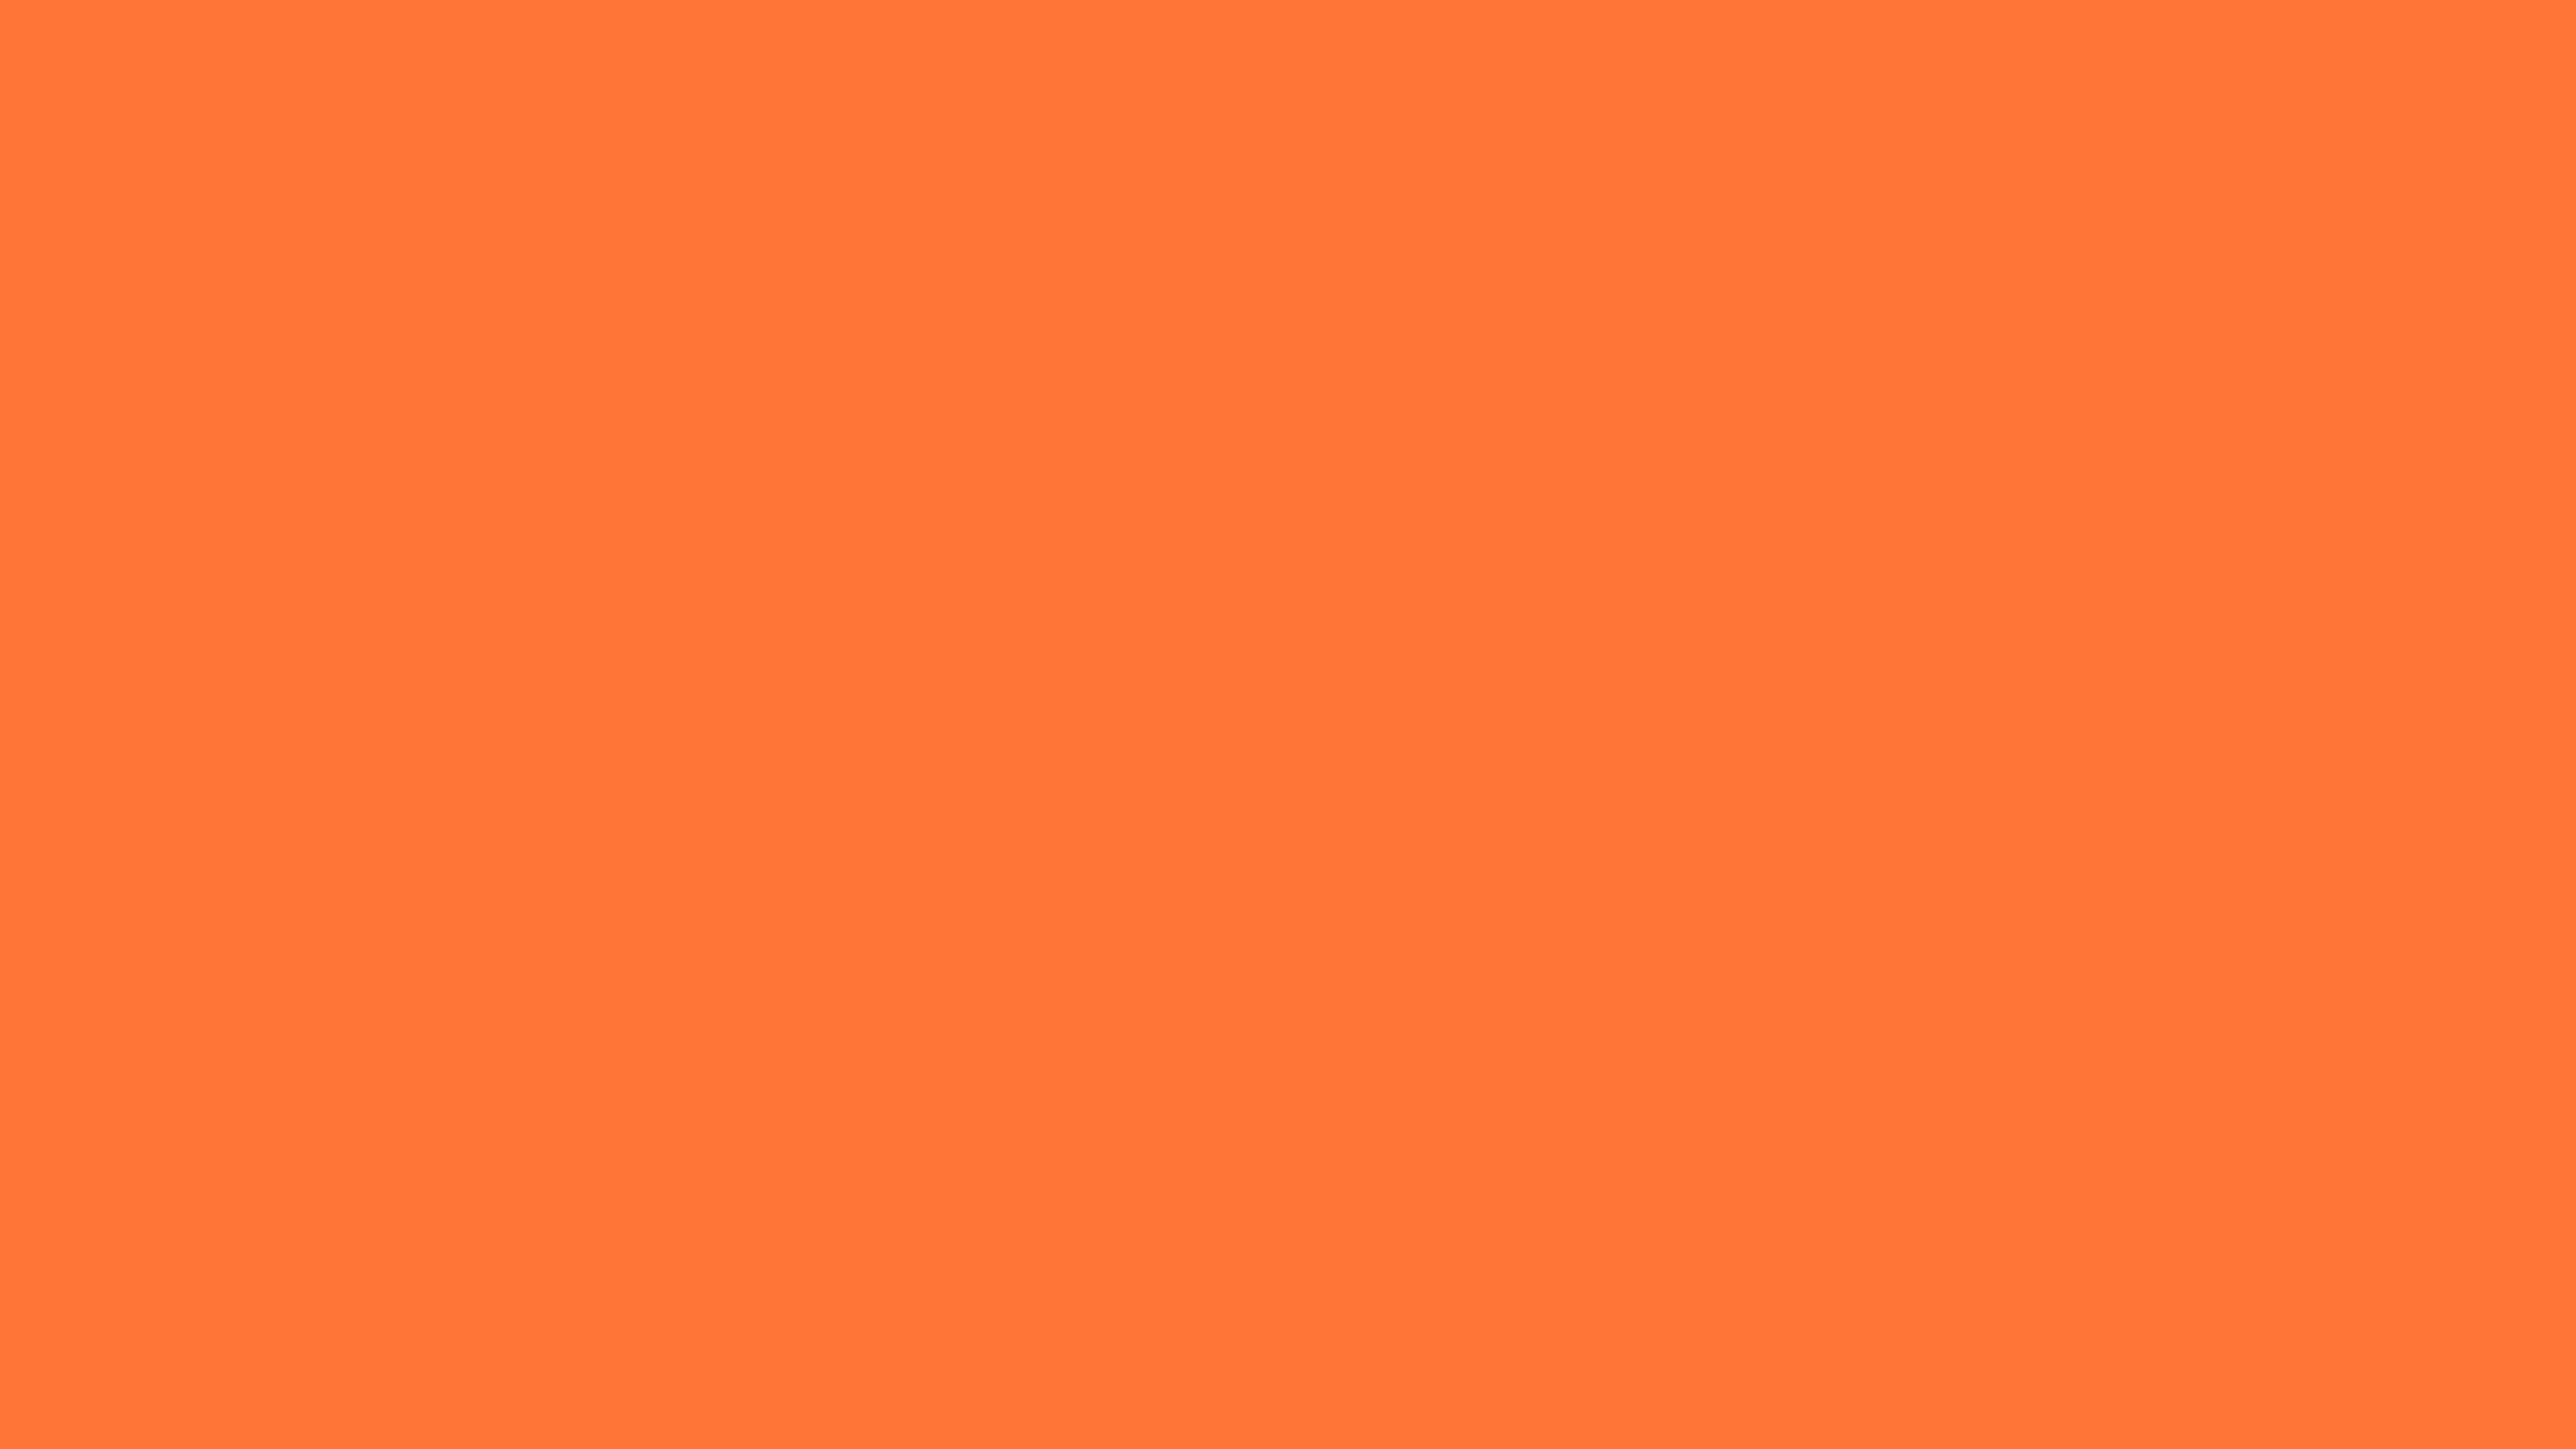 7680x4320 Orange Crayola Solid Color Background